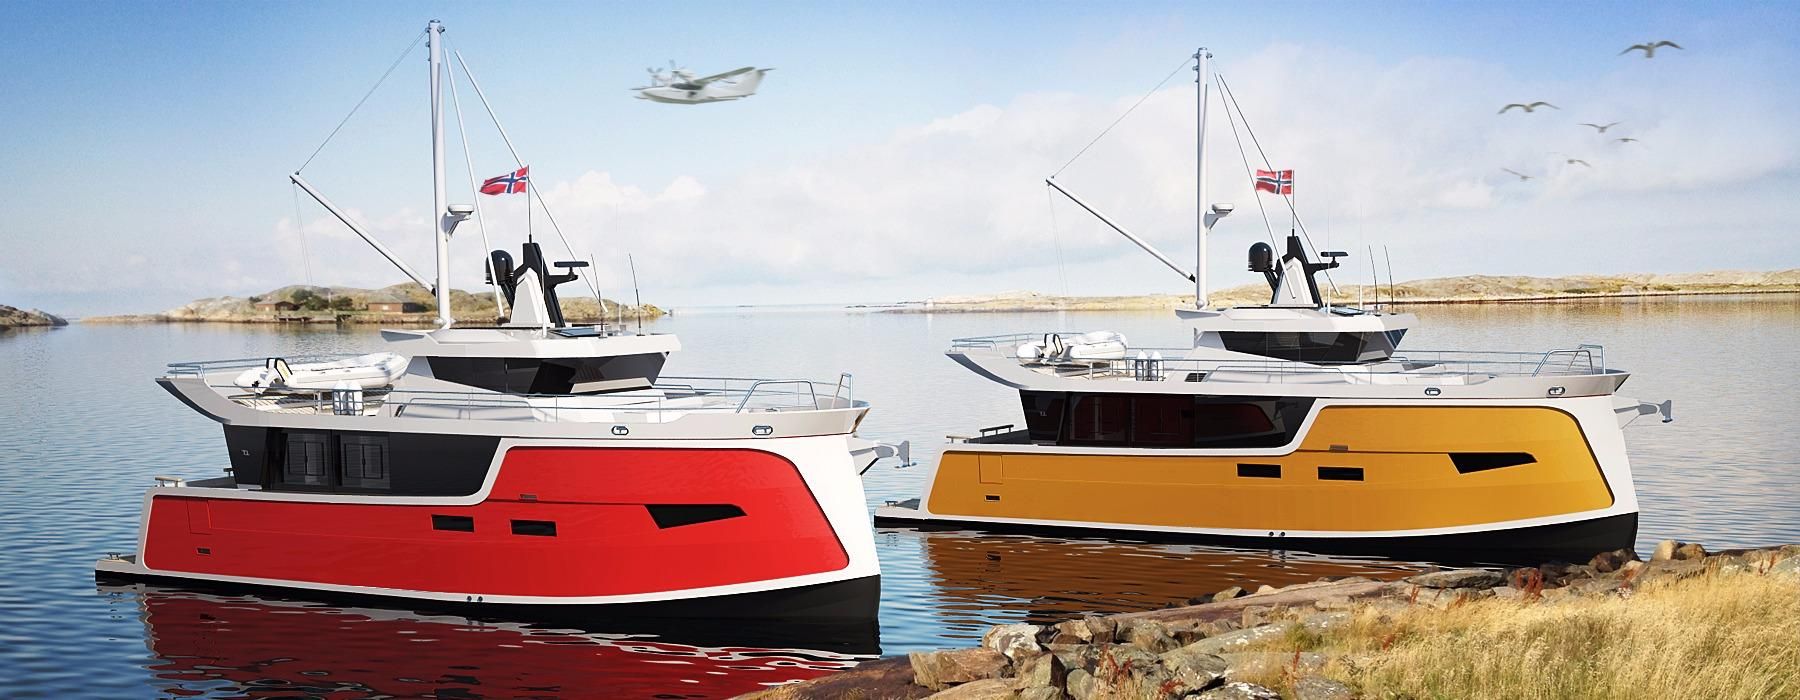 stessl tri-hull 6 metre aluminium boat for sale in australia